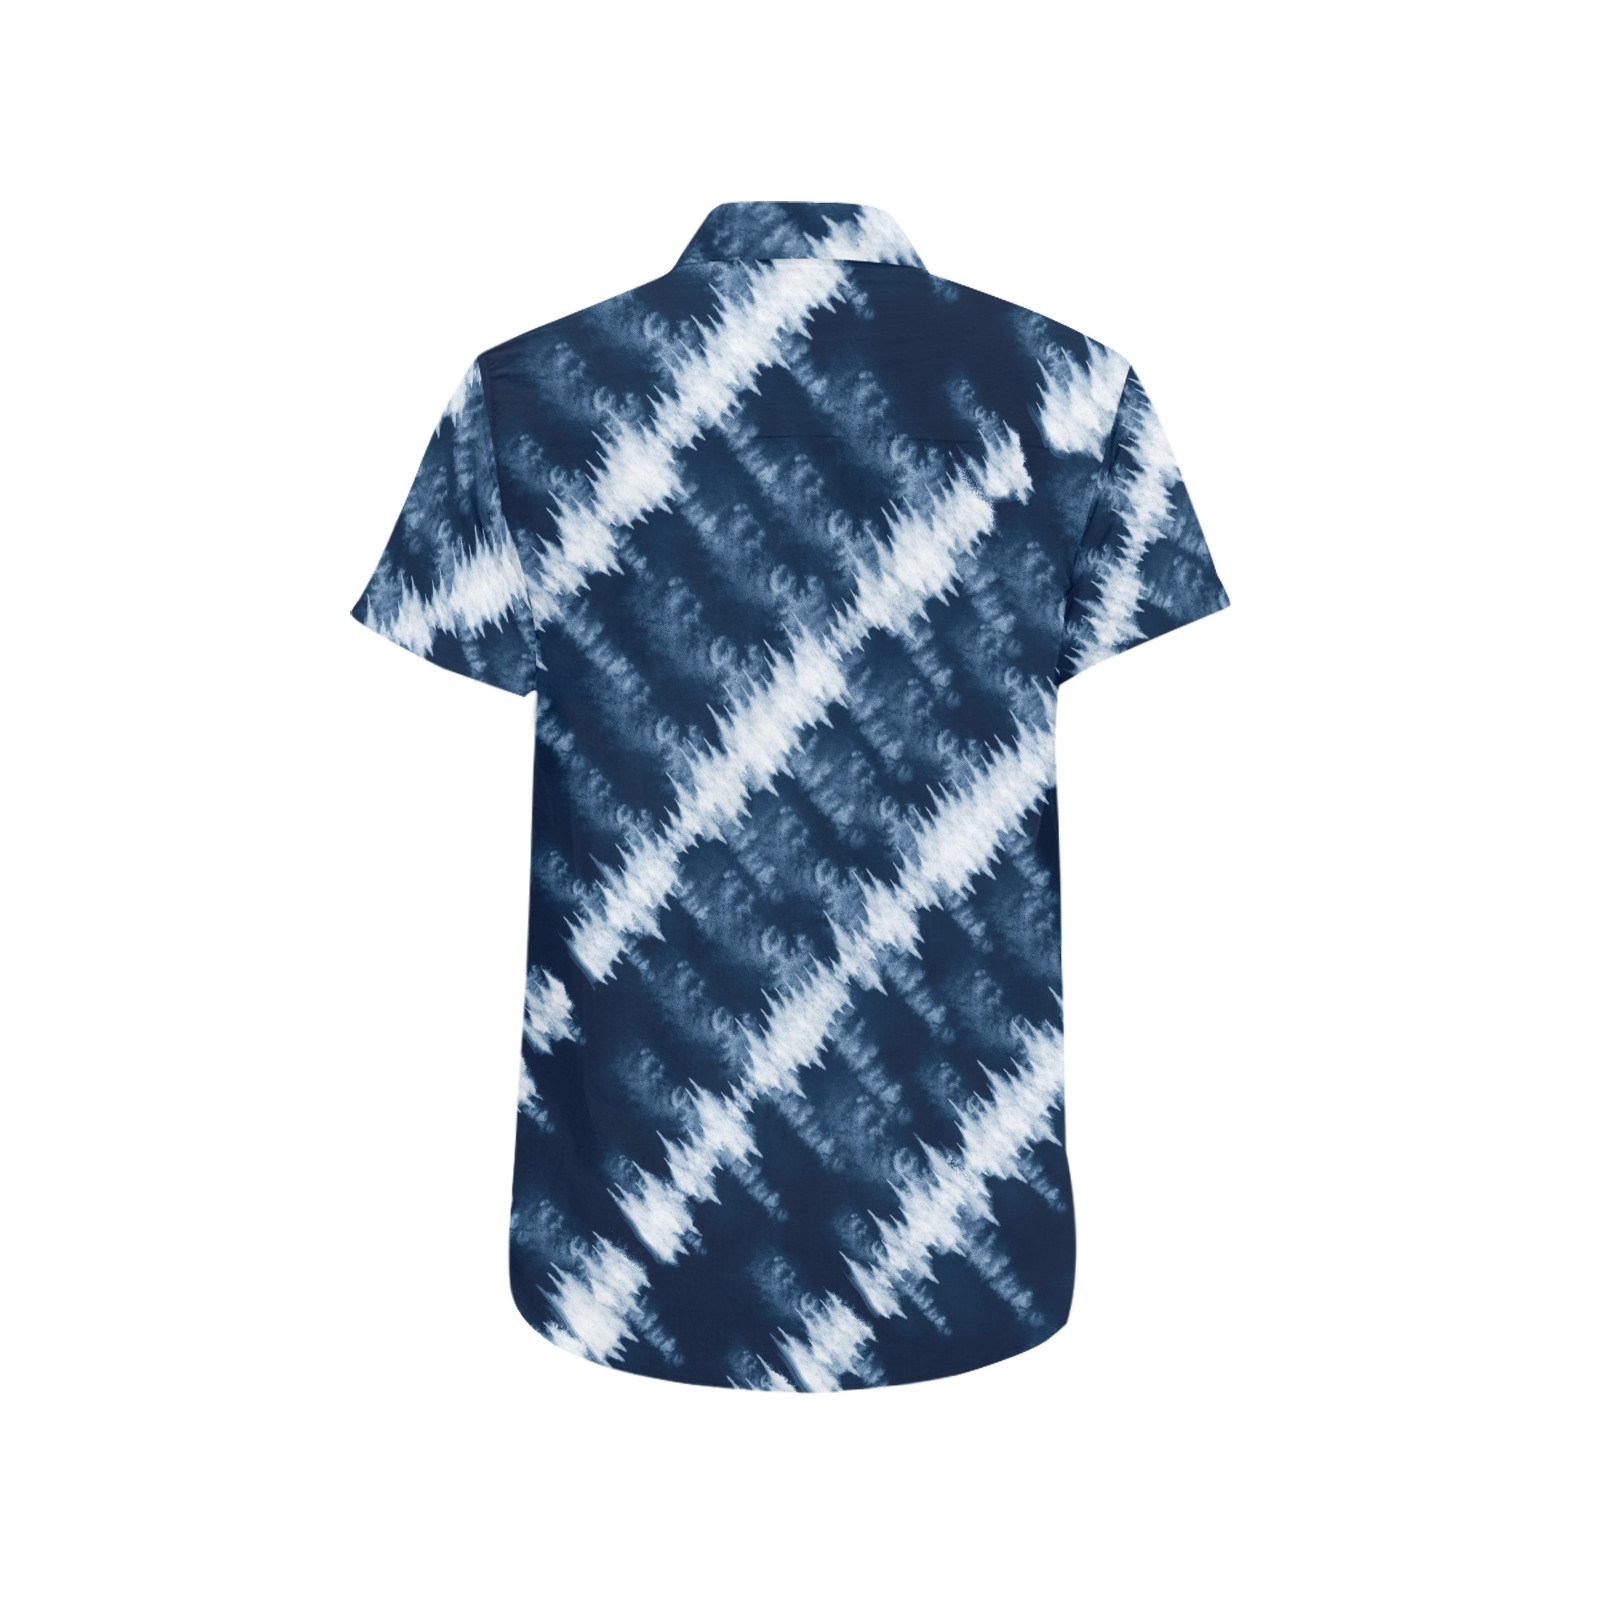 Indigo Tie dye 023 Men's All Over Print Short Sleeve Shirt (Model T53)